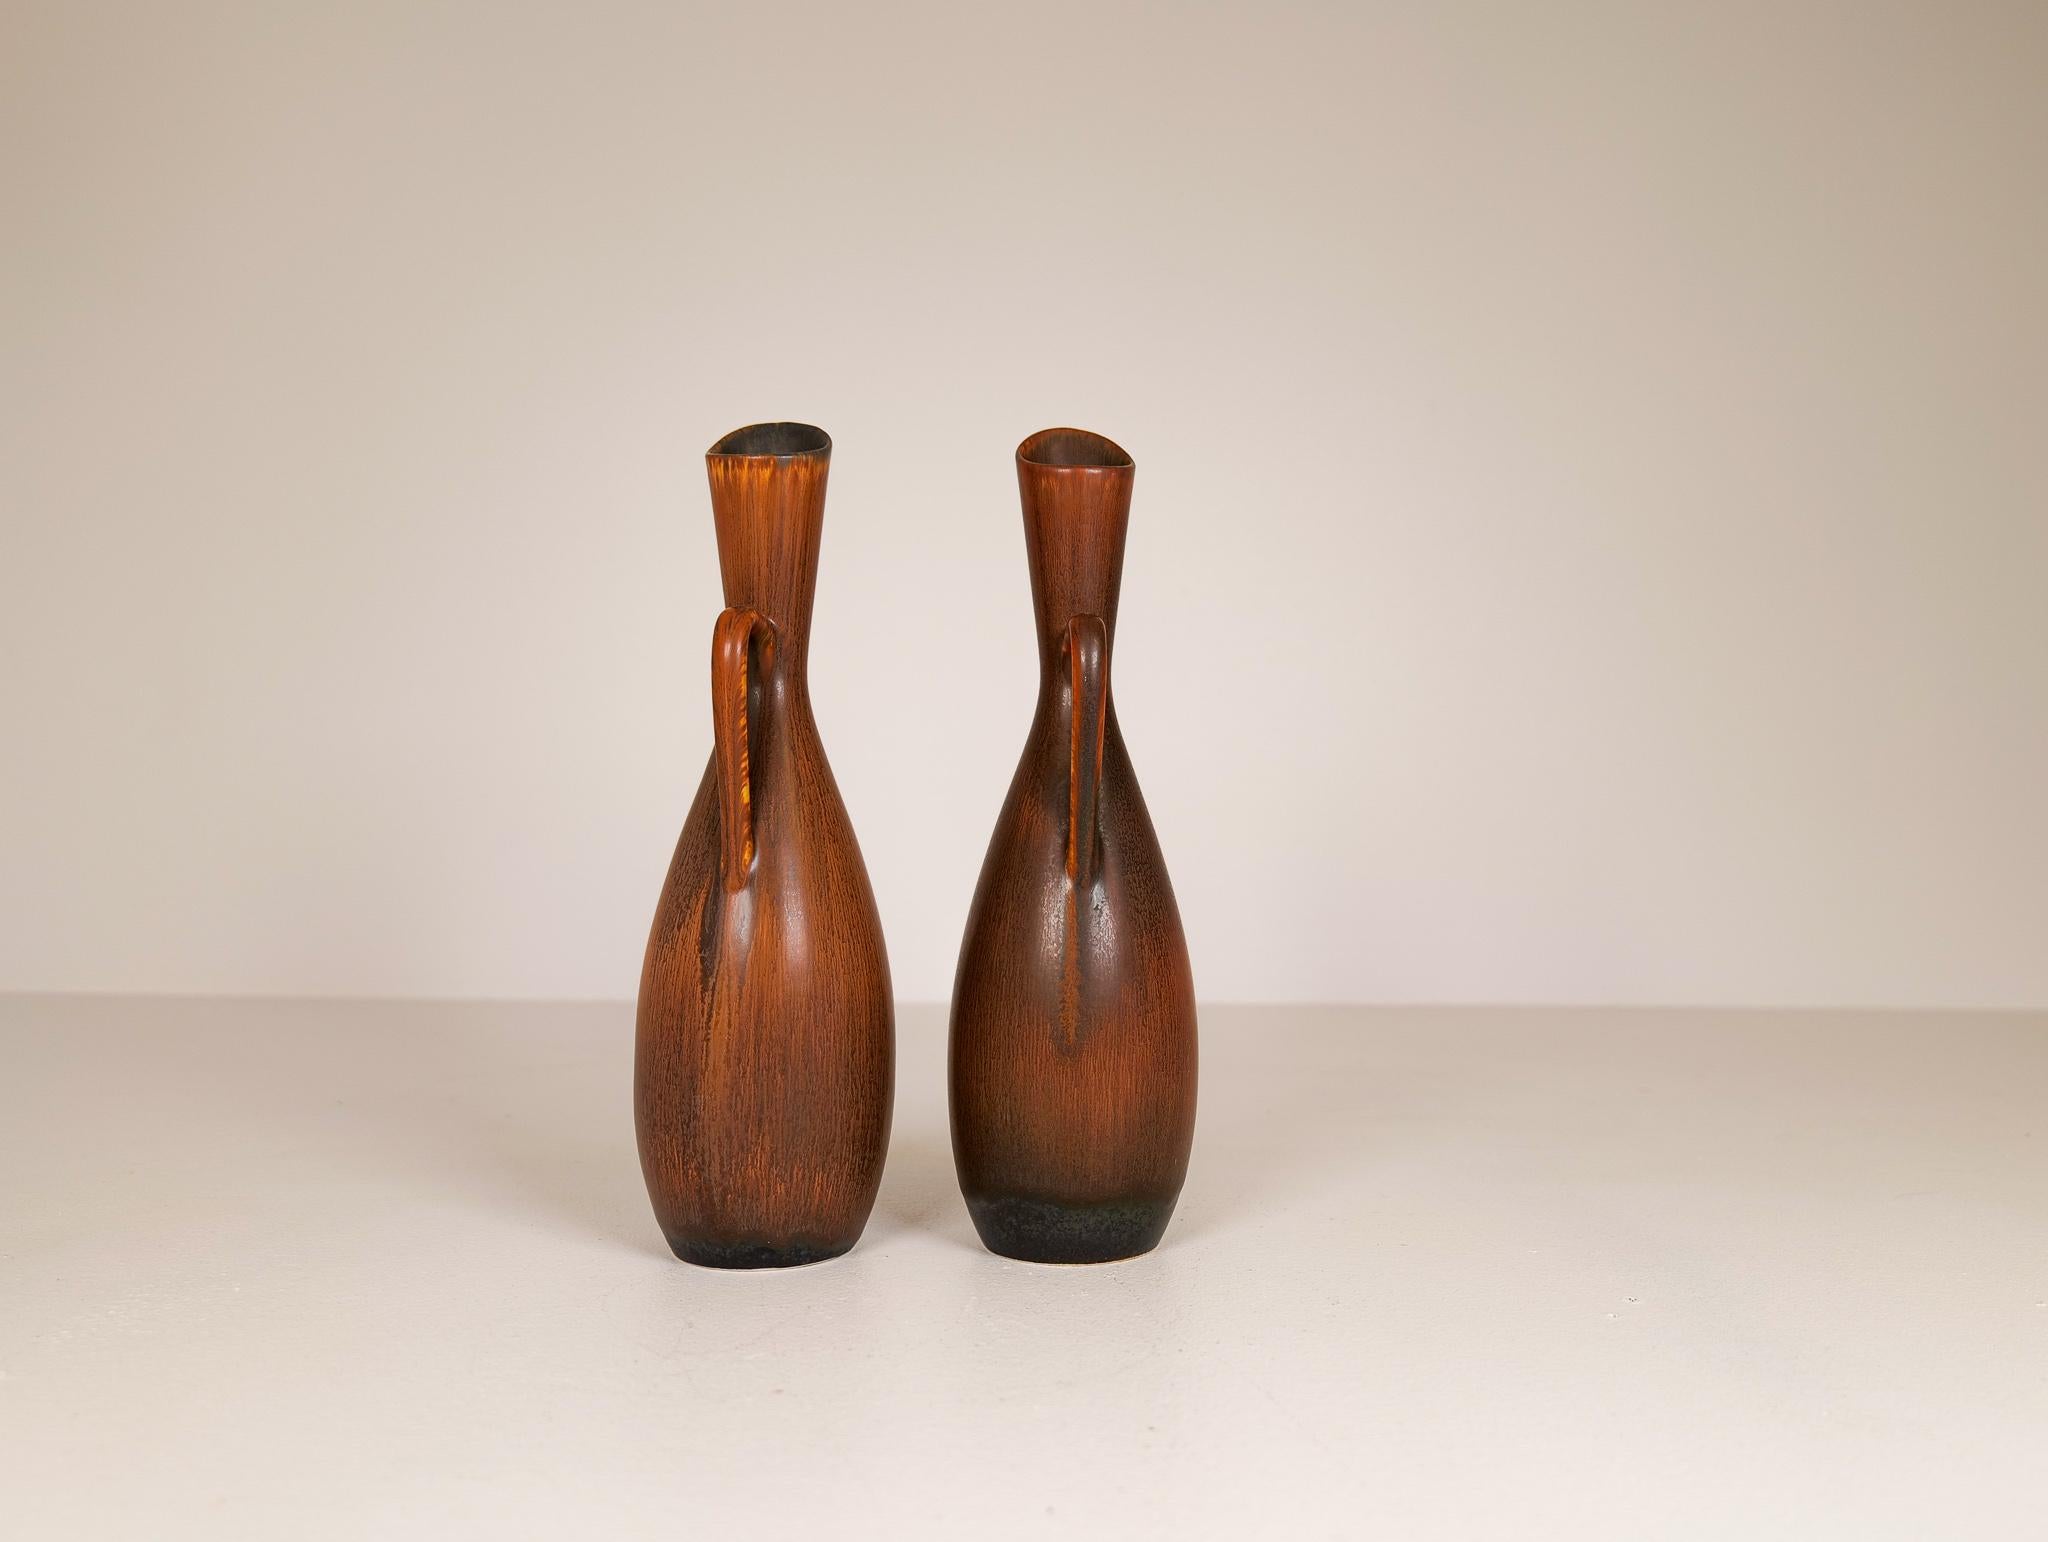 Mid-20th Century Midcentury Modern Vases Rörstrand Carl Harry Stålhane, Sweden, 1950s For Sale